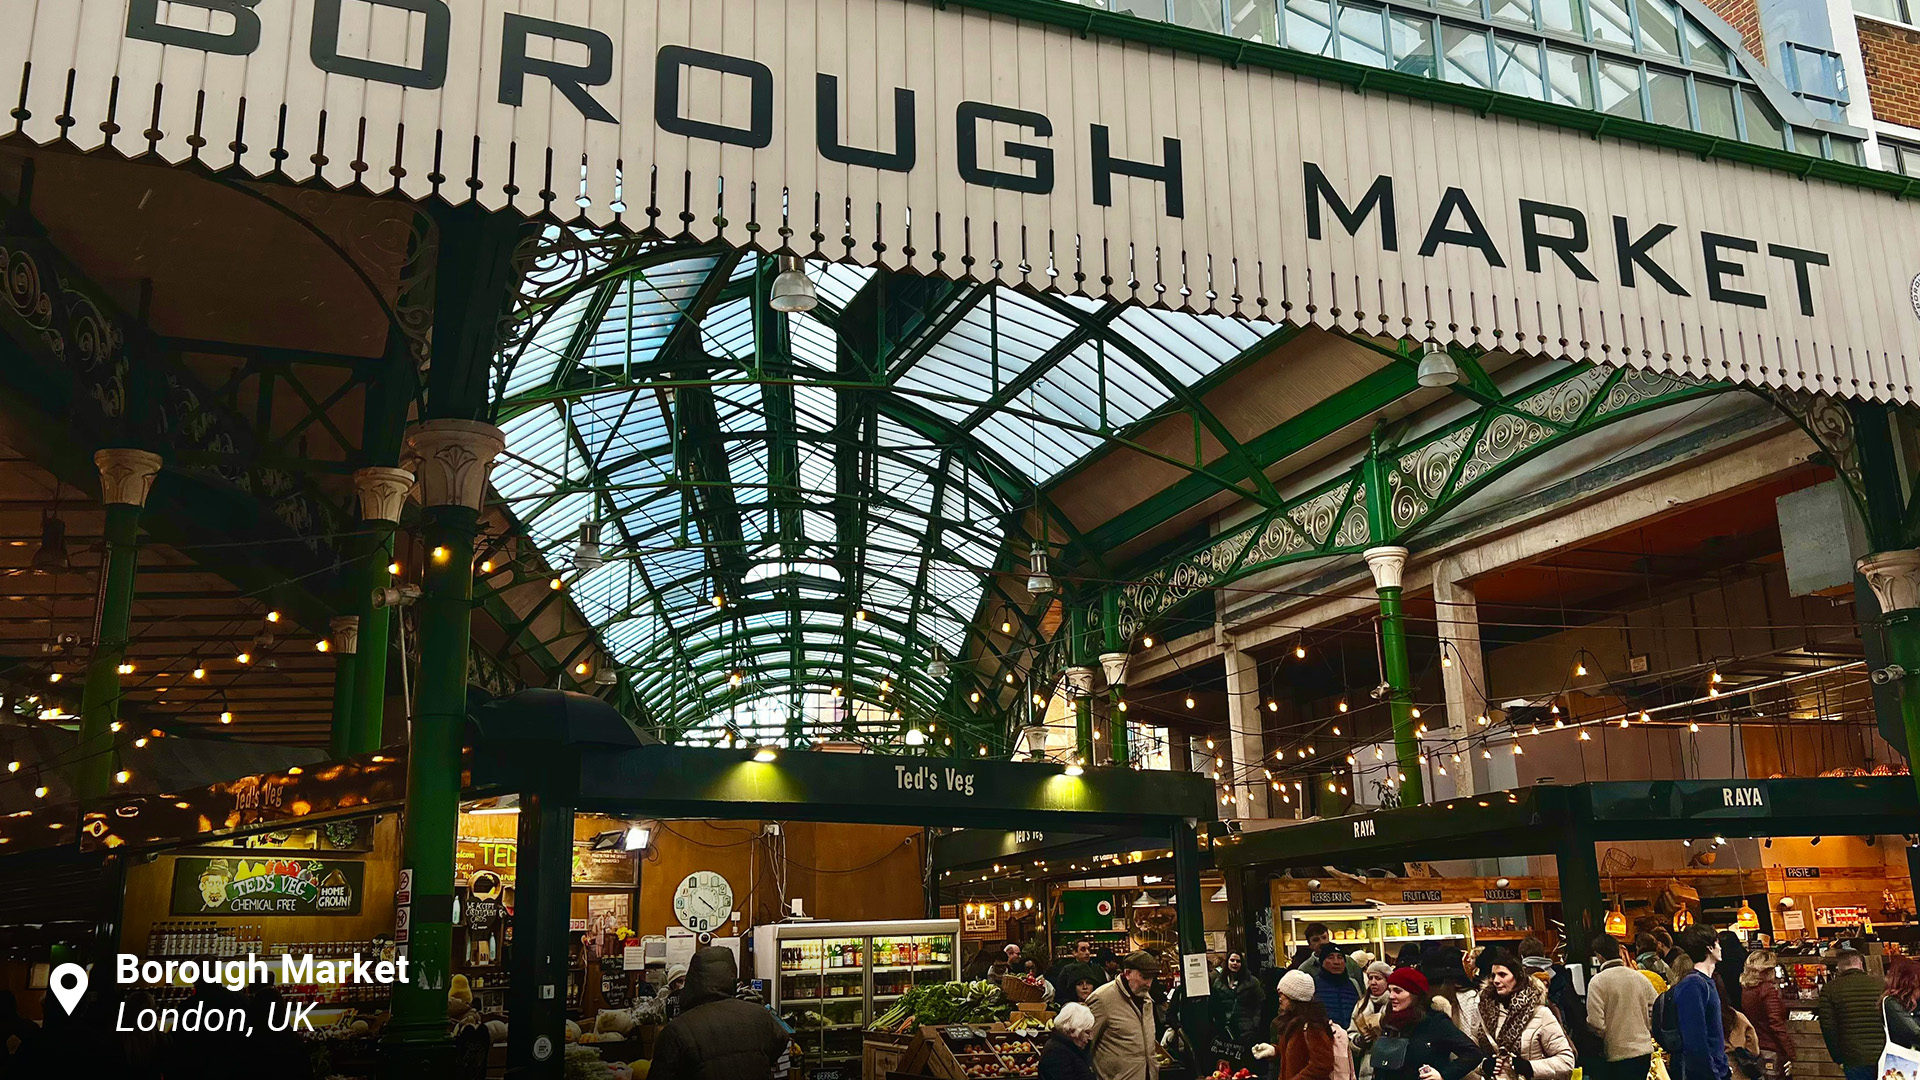 Borough Market, London, UK